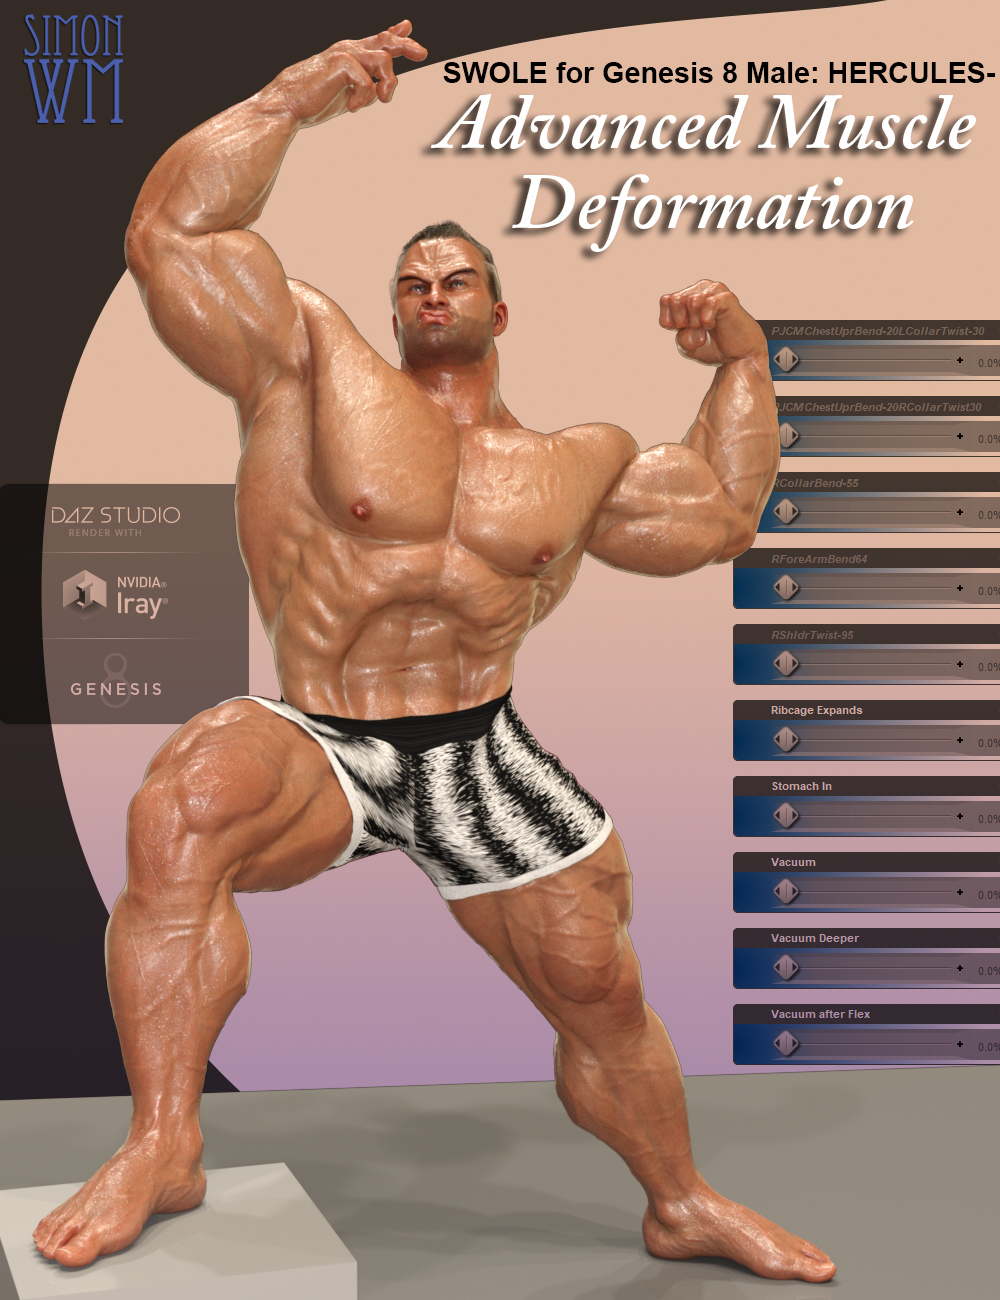 SWOLE for Genesis 8 Male: Hercules - Advanced Muscle Deformation by: SimonWM, 3D Models by Daz 3D